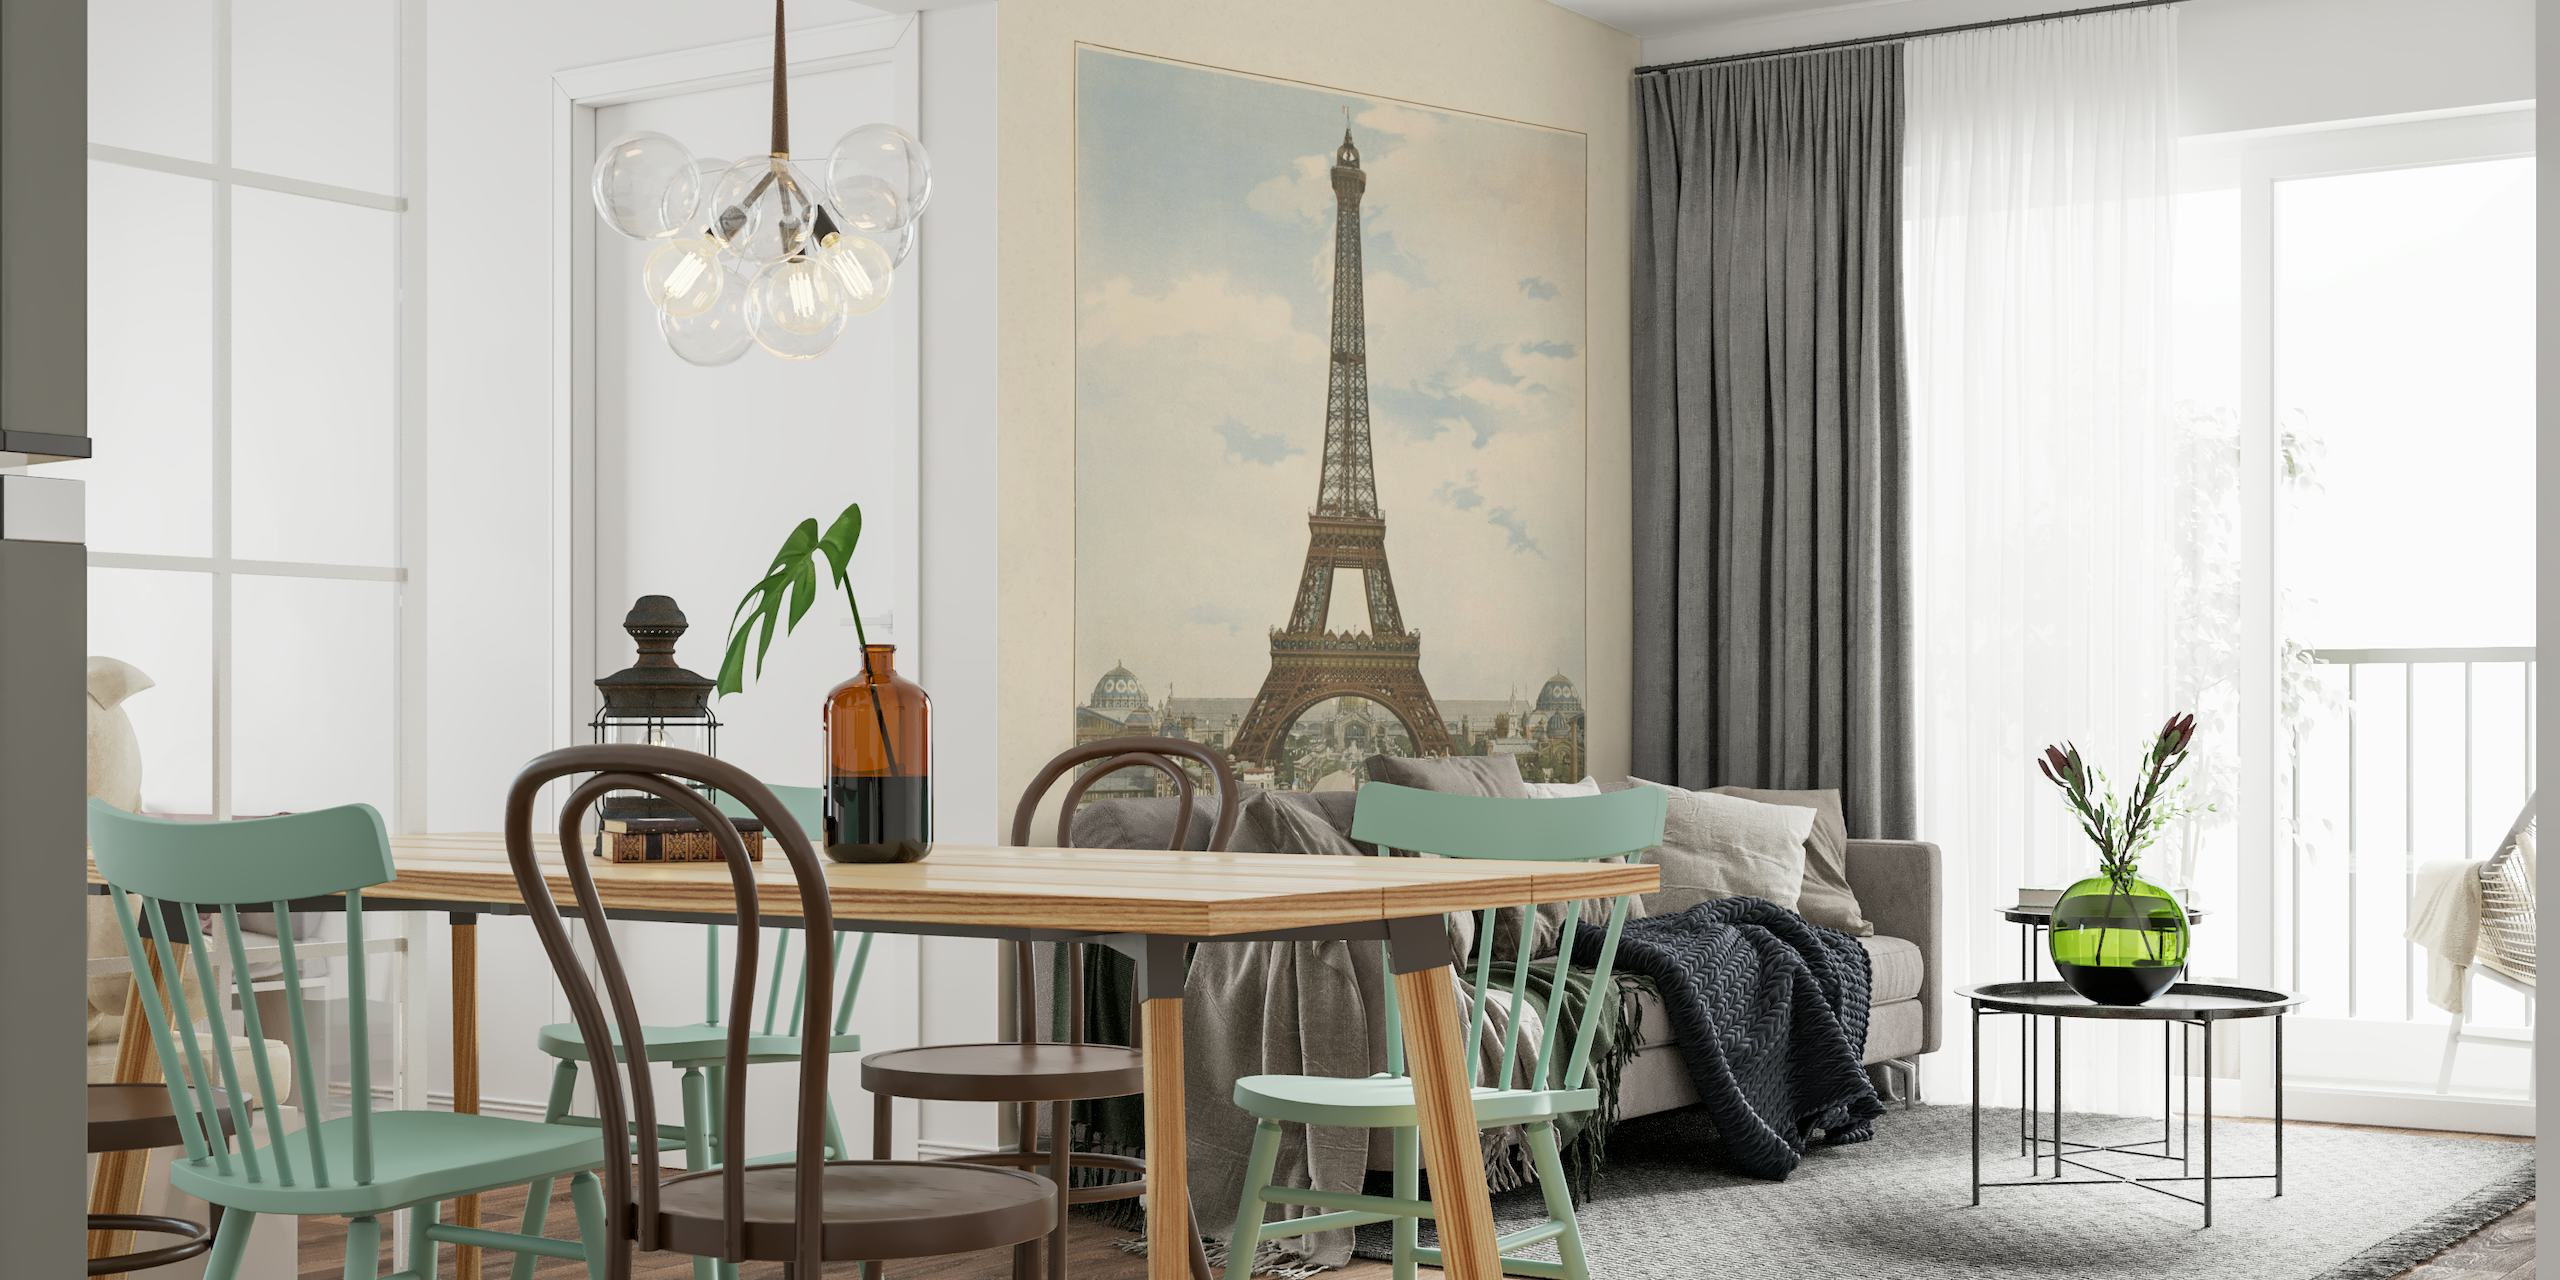 Muurschildering in vintage-stijl van de Eiffeltoren in Parijs met omringende architectuur onder een kalme hemel.